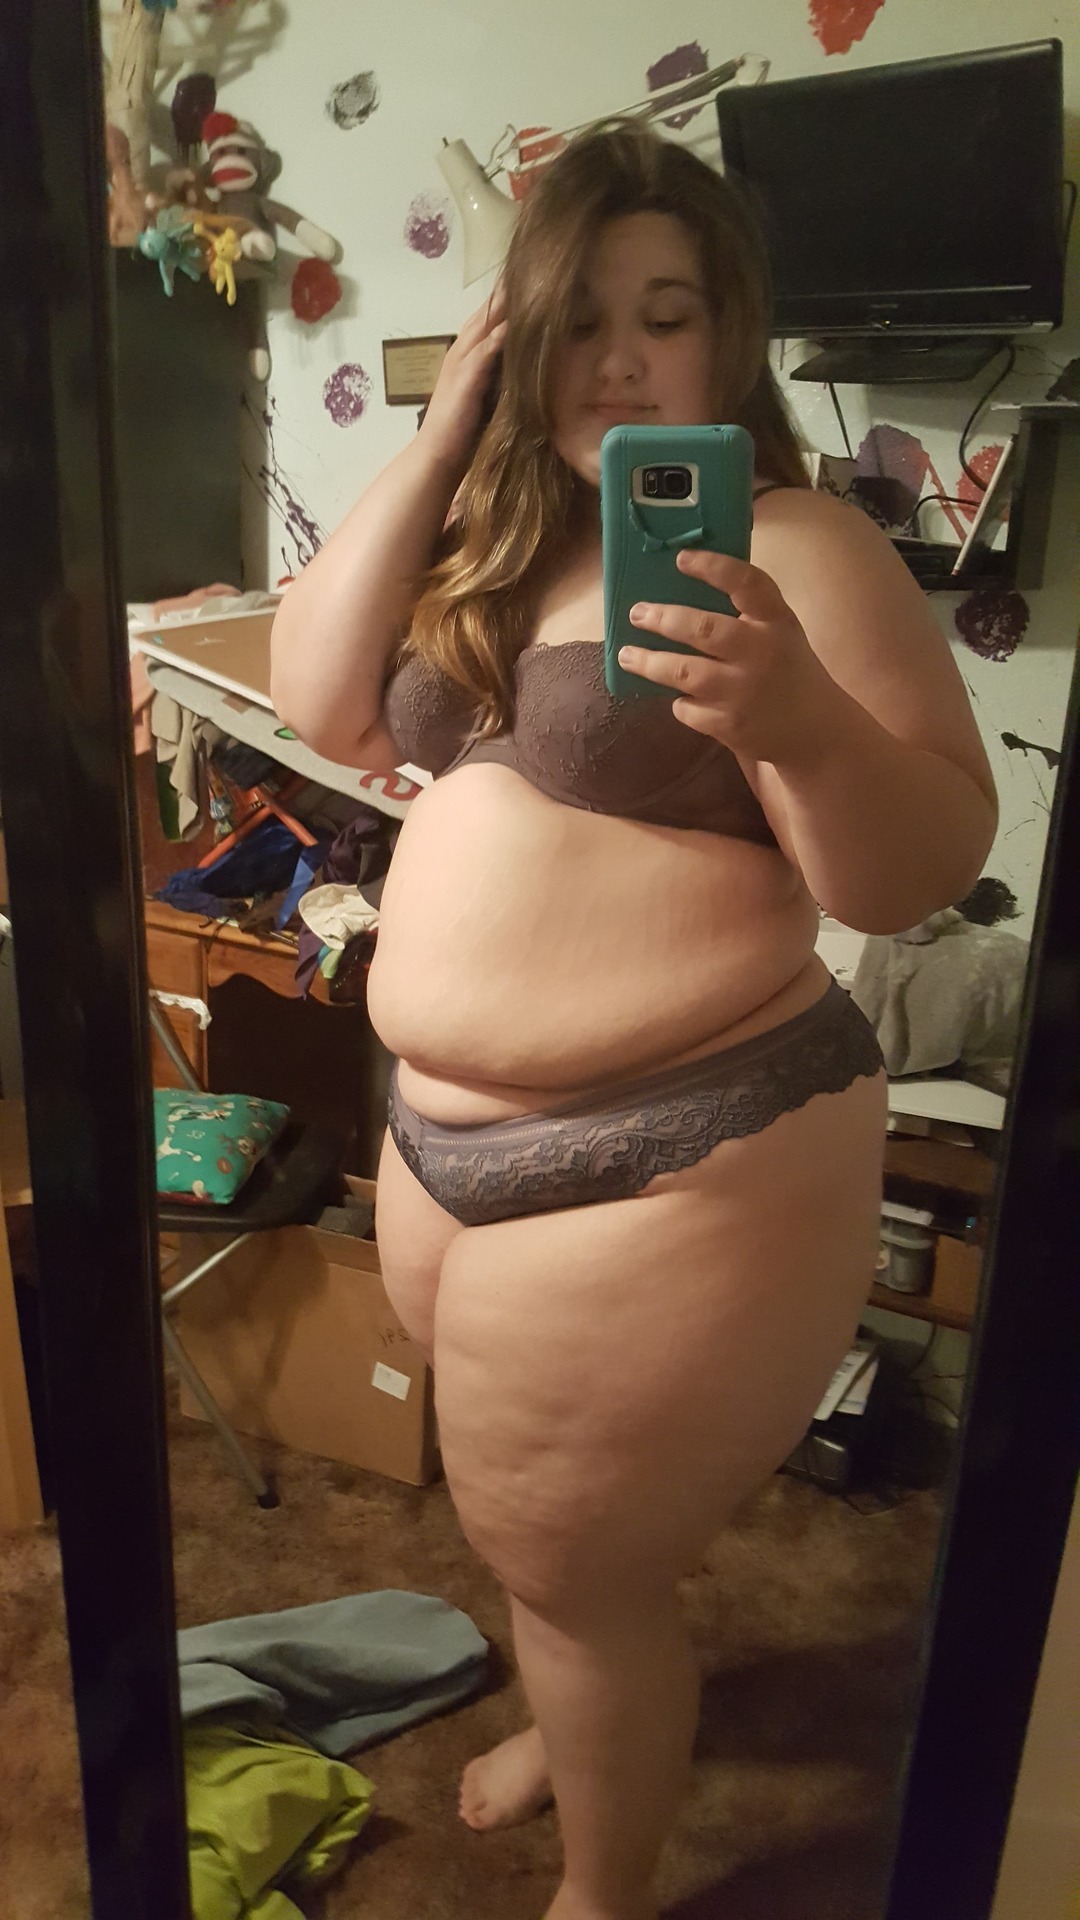 chubby girl selfie in panties free hd photo